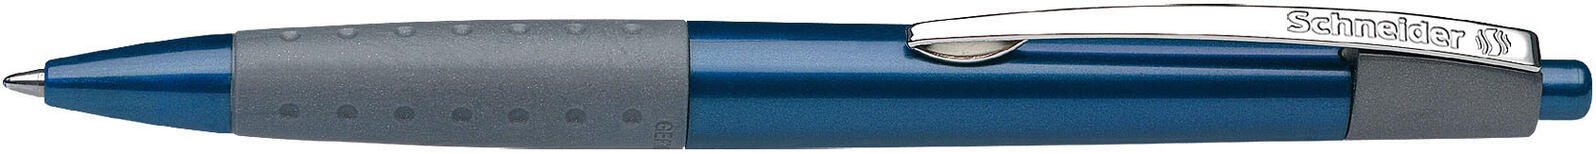 Schneider Kugelschreiber Kugelschreiber Loox blau,20er 0.6 mm Blau 20 St.